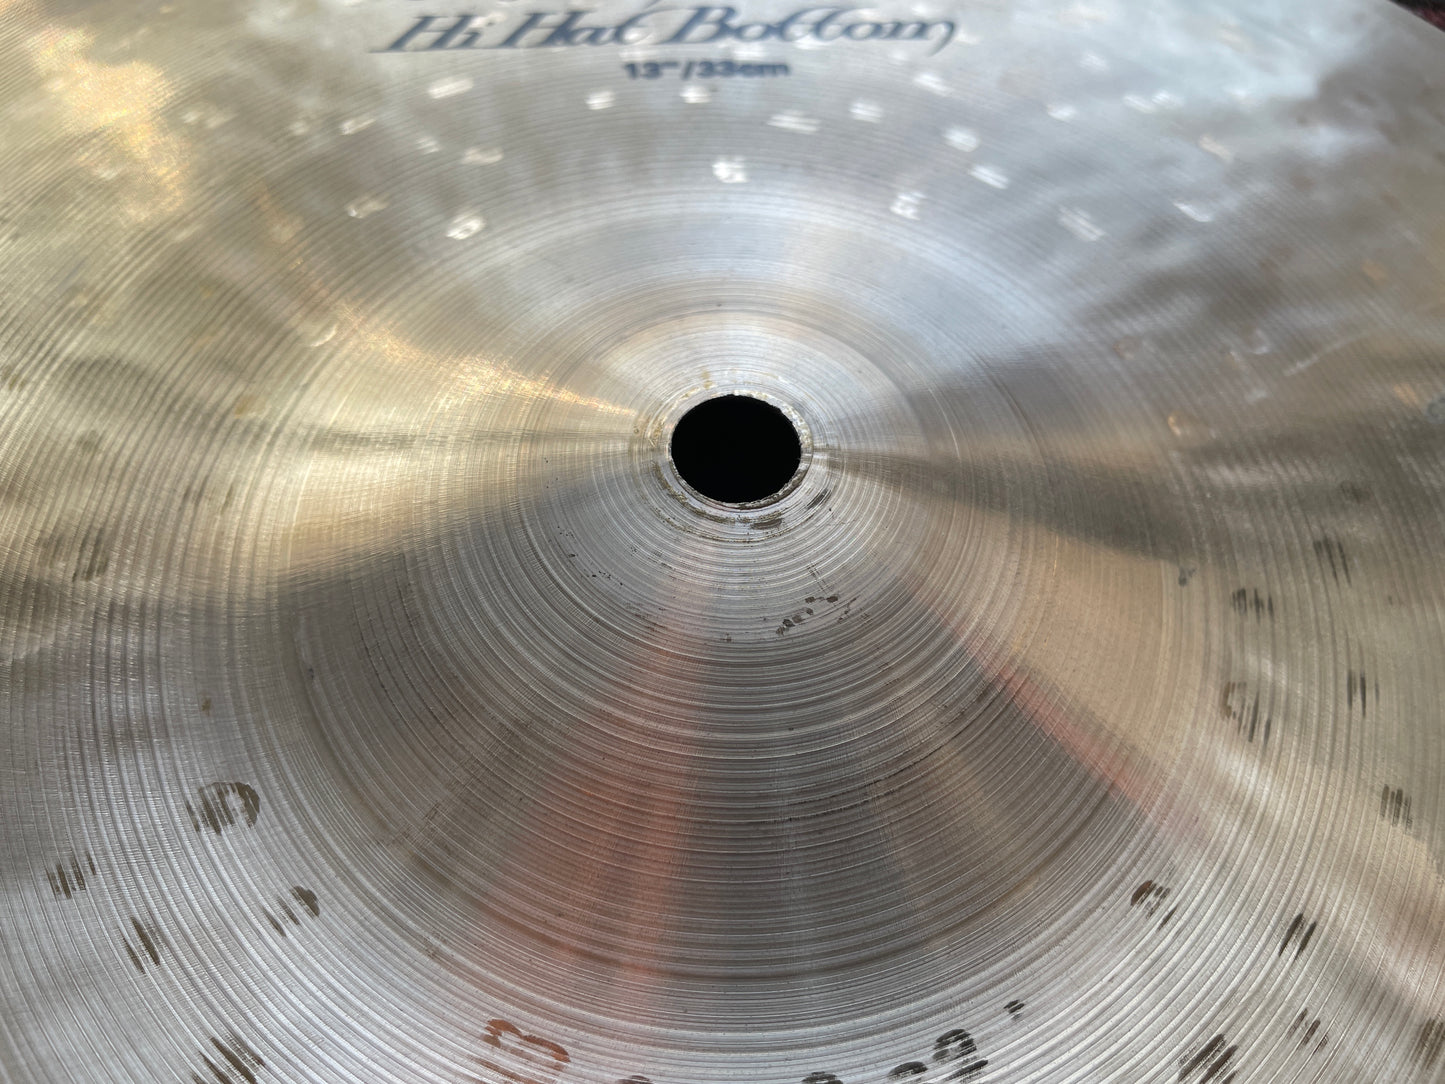 13" Zildjian K Custom Dark Hi-Hat Cymbal Pair 908g/1038g K0940 *Video Demo*